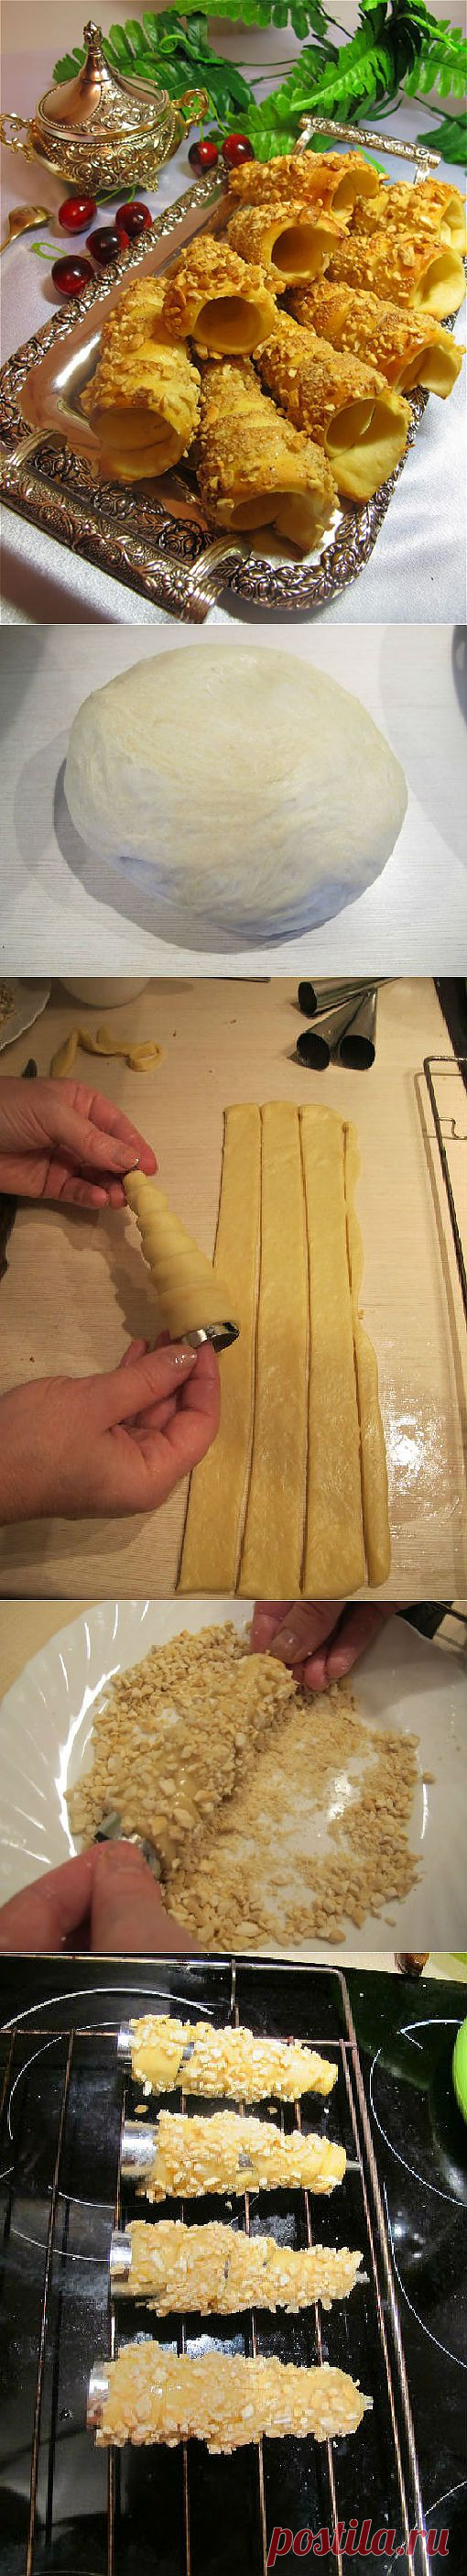 (2) Чешские трубочки - пошаговый рецепт с фото - чешские трубочки - как готовить: ингредиенты, состав, время приготовления - Леди@Mail.Ru